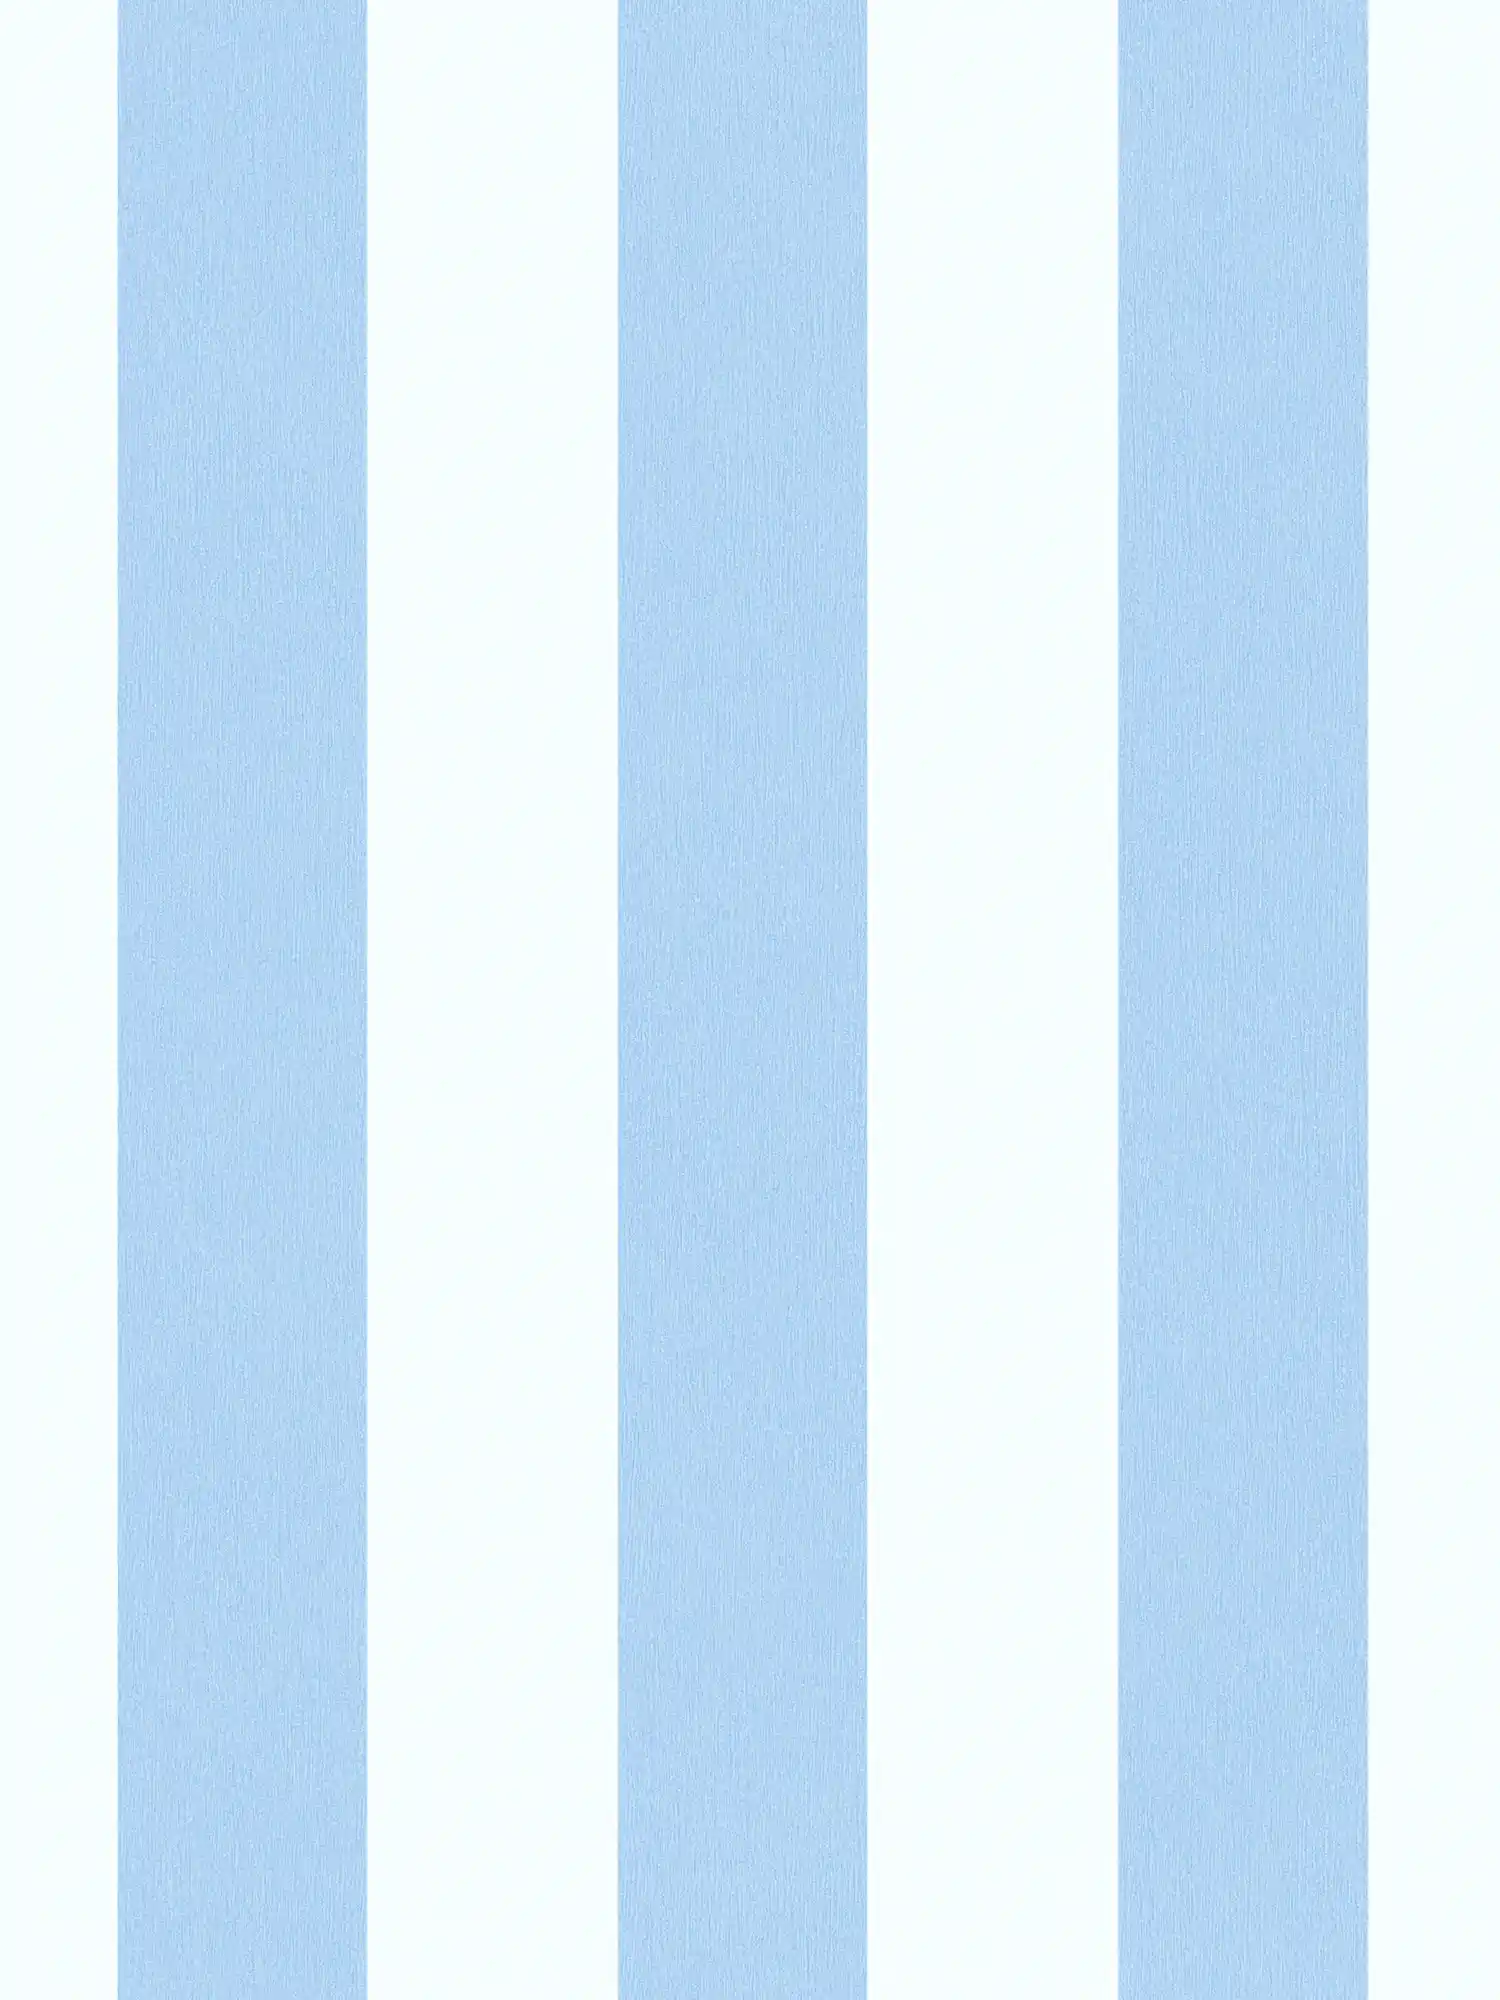 behang kinderkamer jongen verticale strepen - blauw, wit
